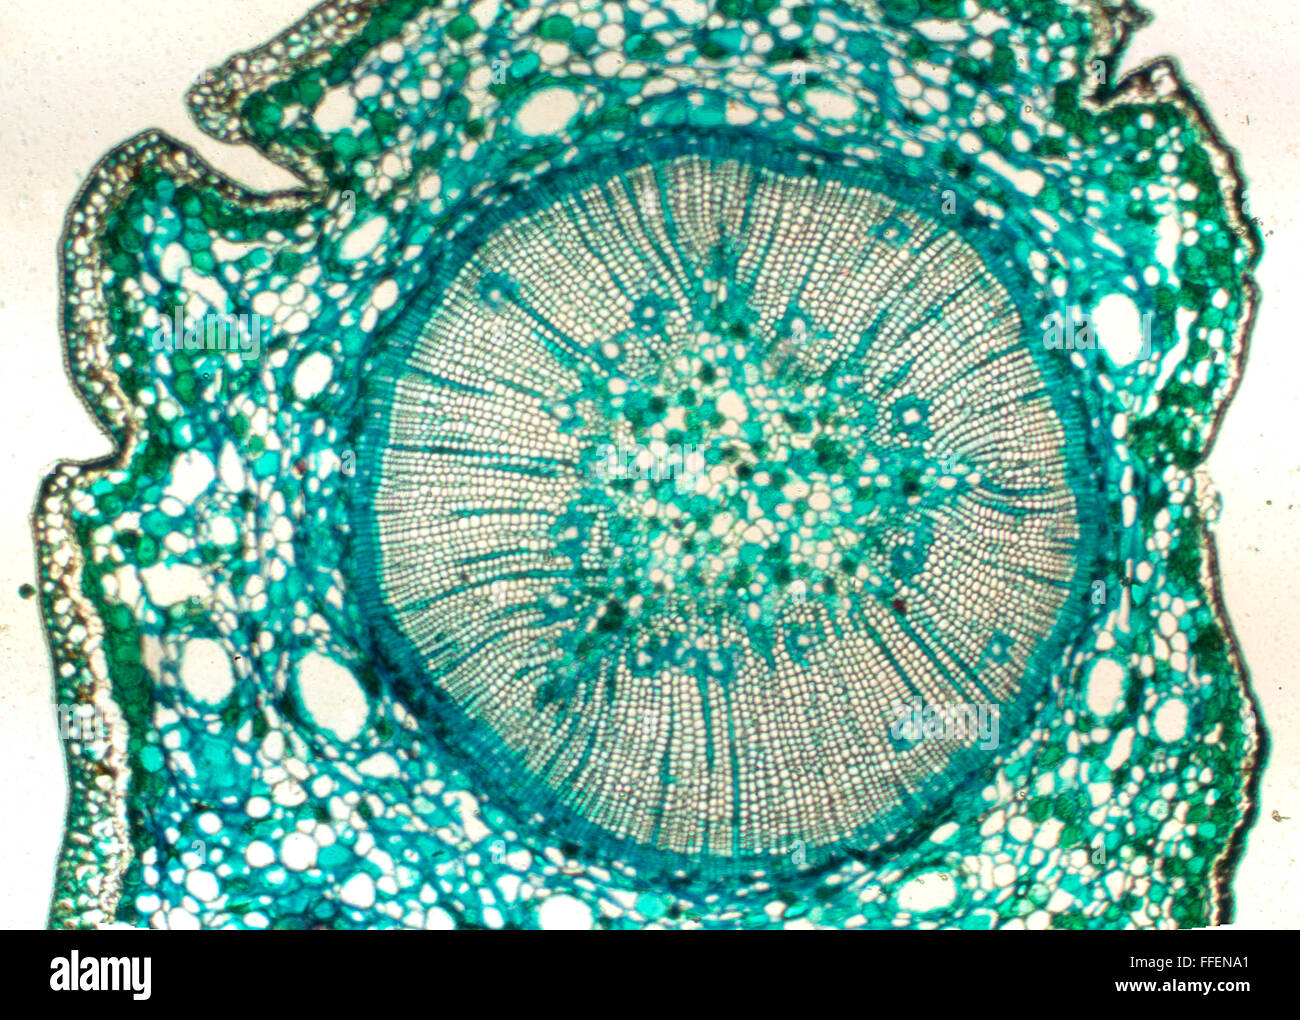 Image microscopique de racine de plante Banque D'Images